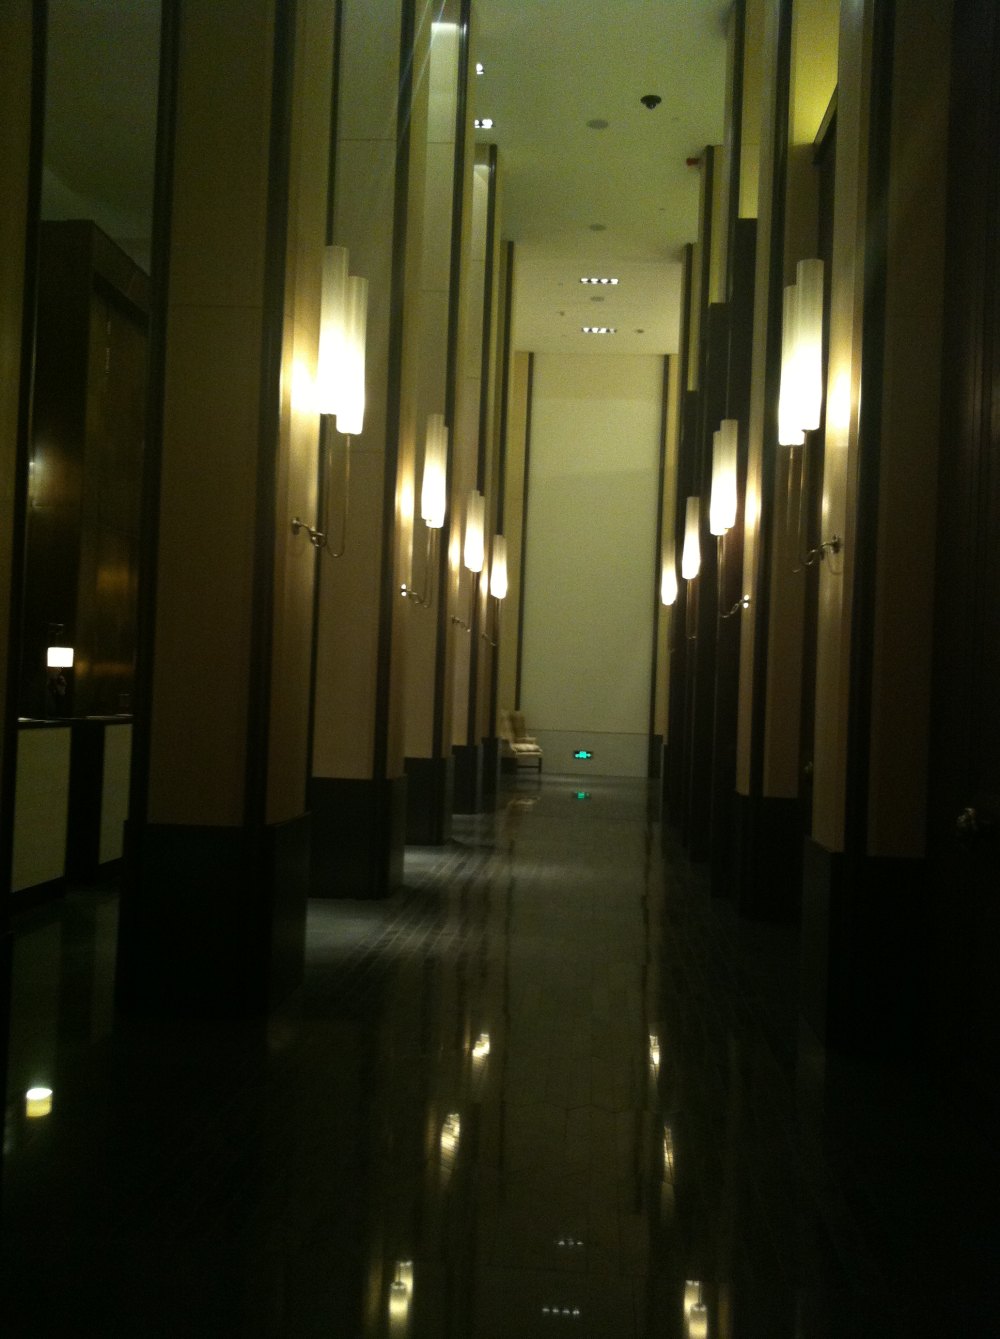 广州文华东方酒店(Mandarin Oriental Hotel)20130613第9页更新_IMG_5069.JPG